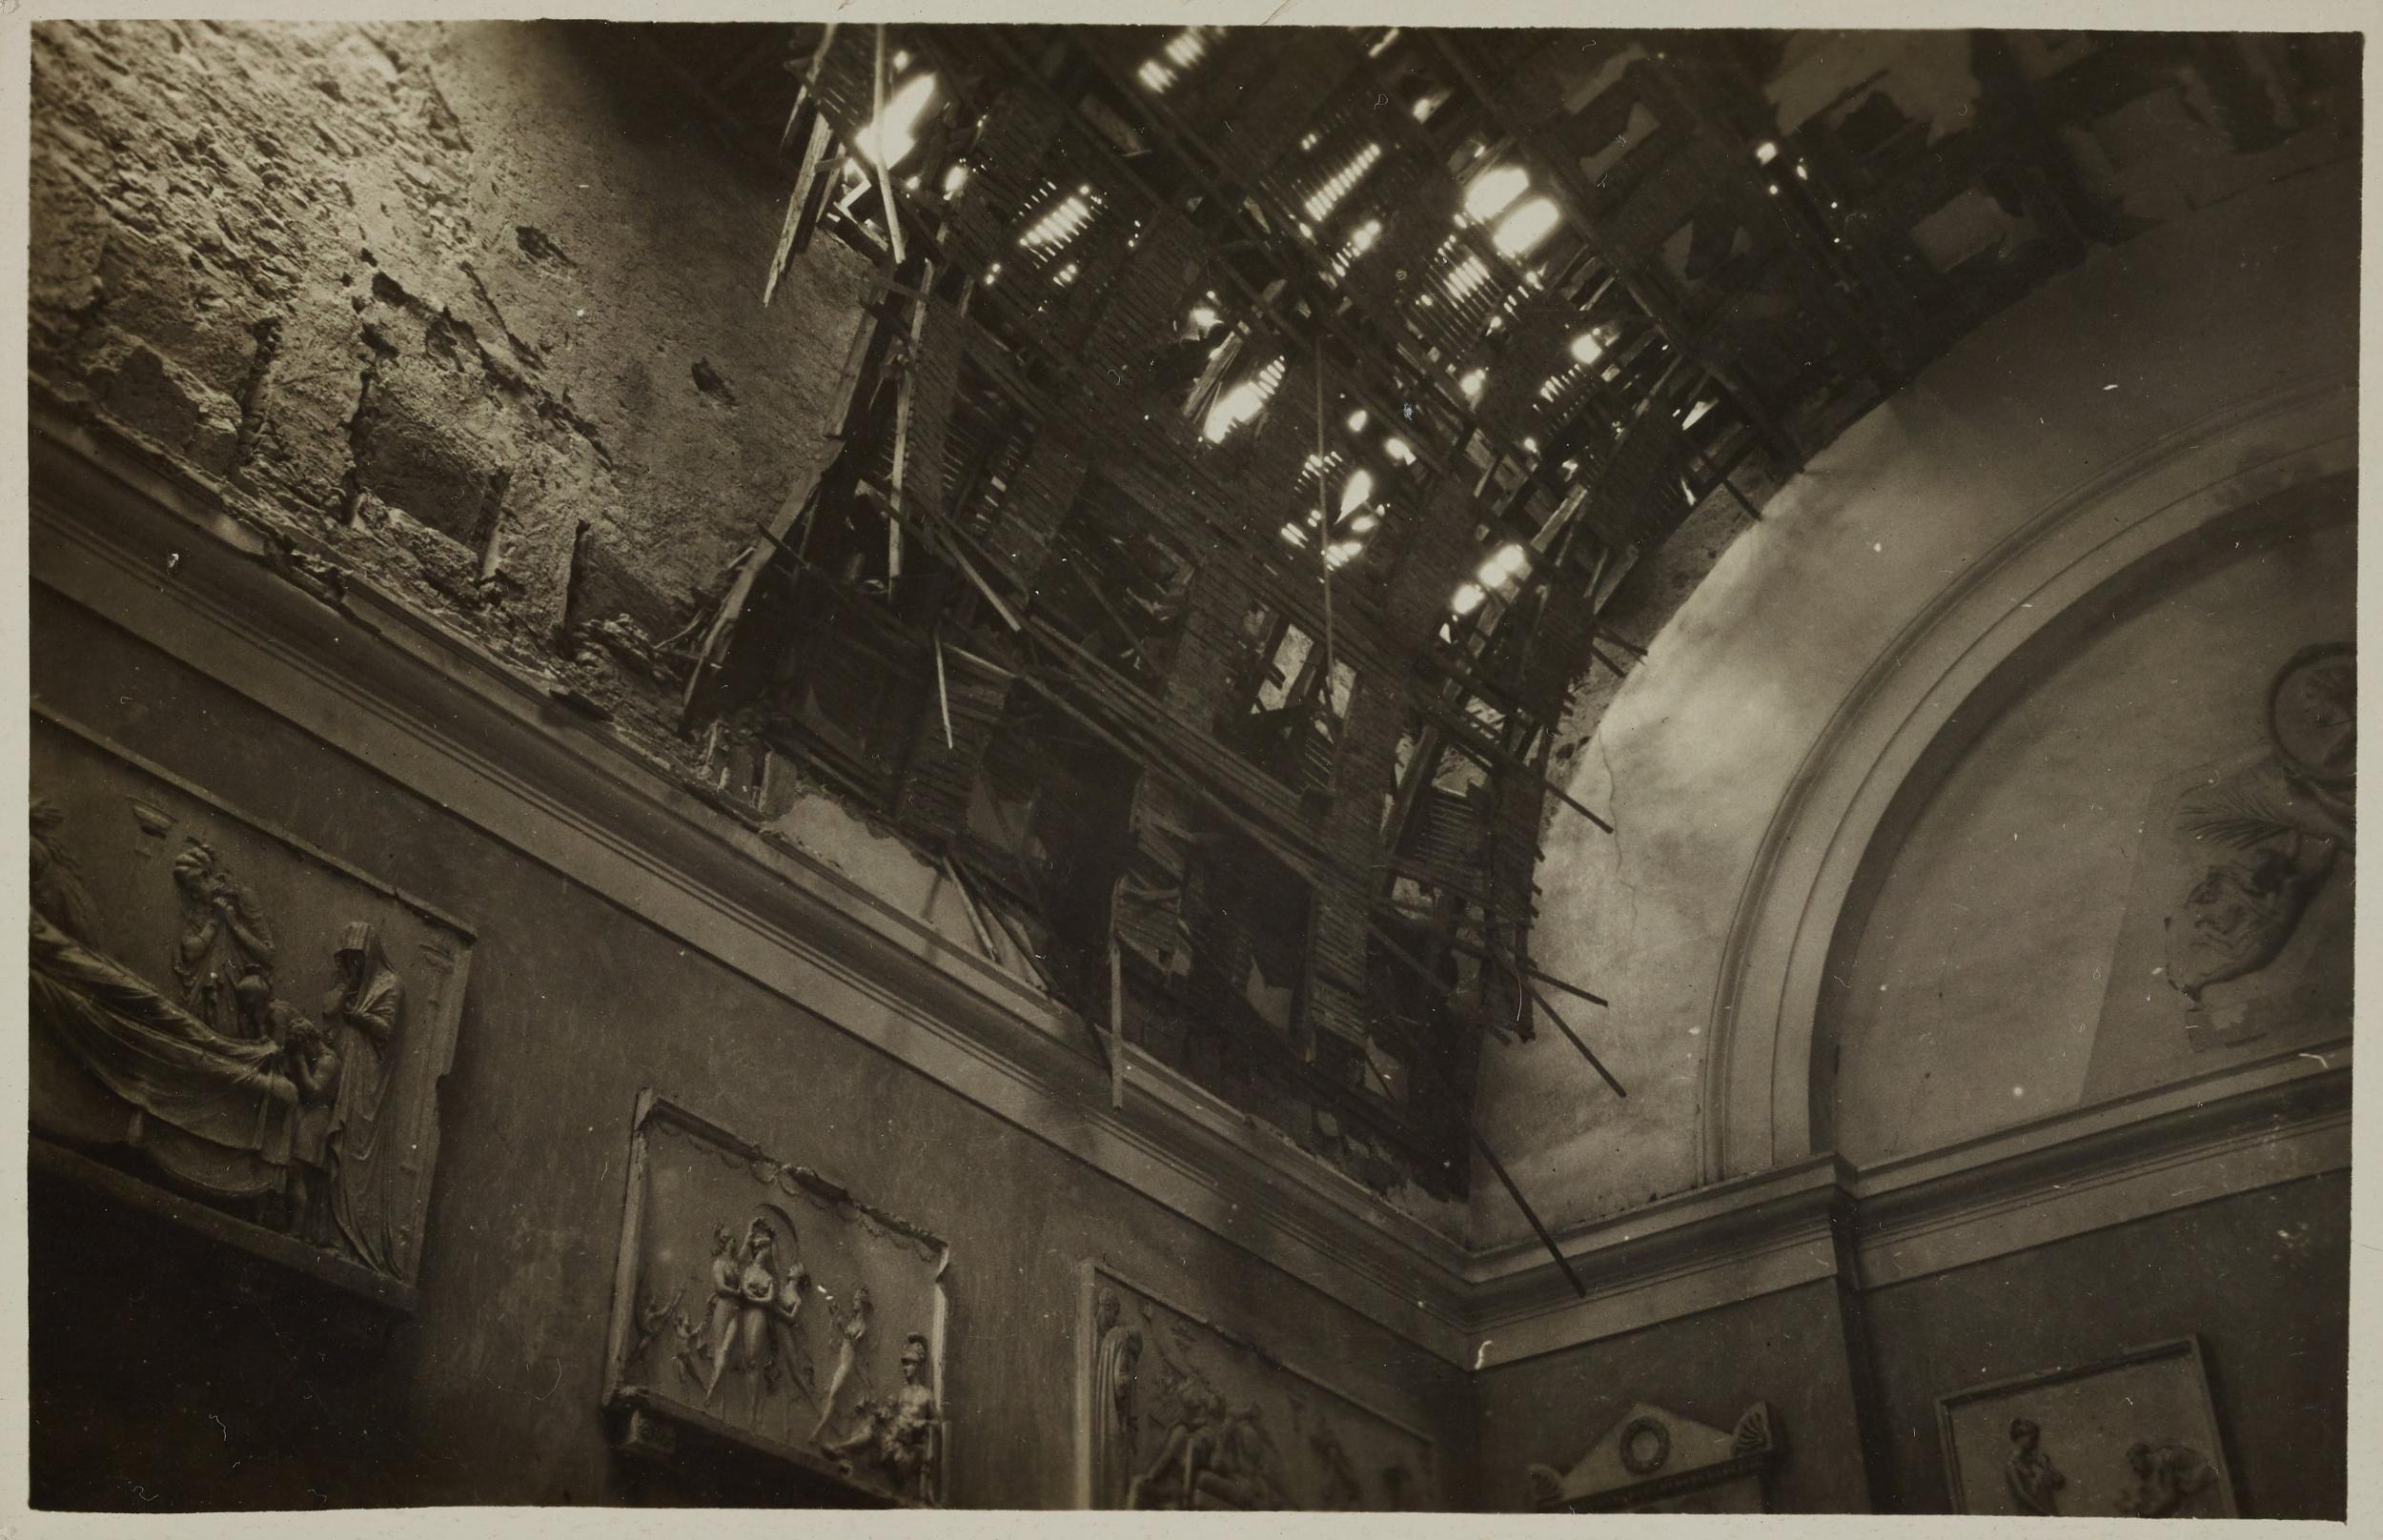 Fotografo non identificato, Possagno - interno della Gipsoteca dopo i bombardamenti, la volta, gelatina ai sali d'argento, MPI6023197